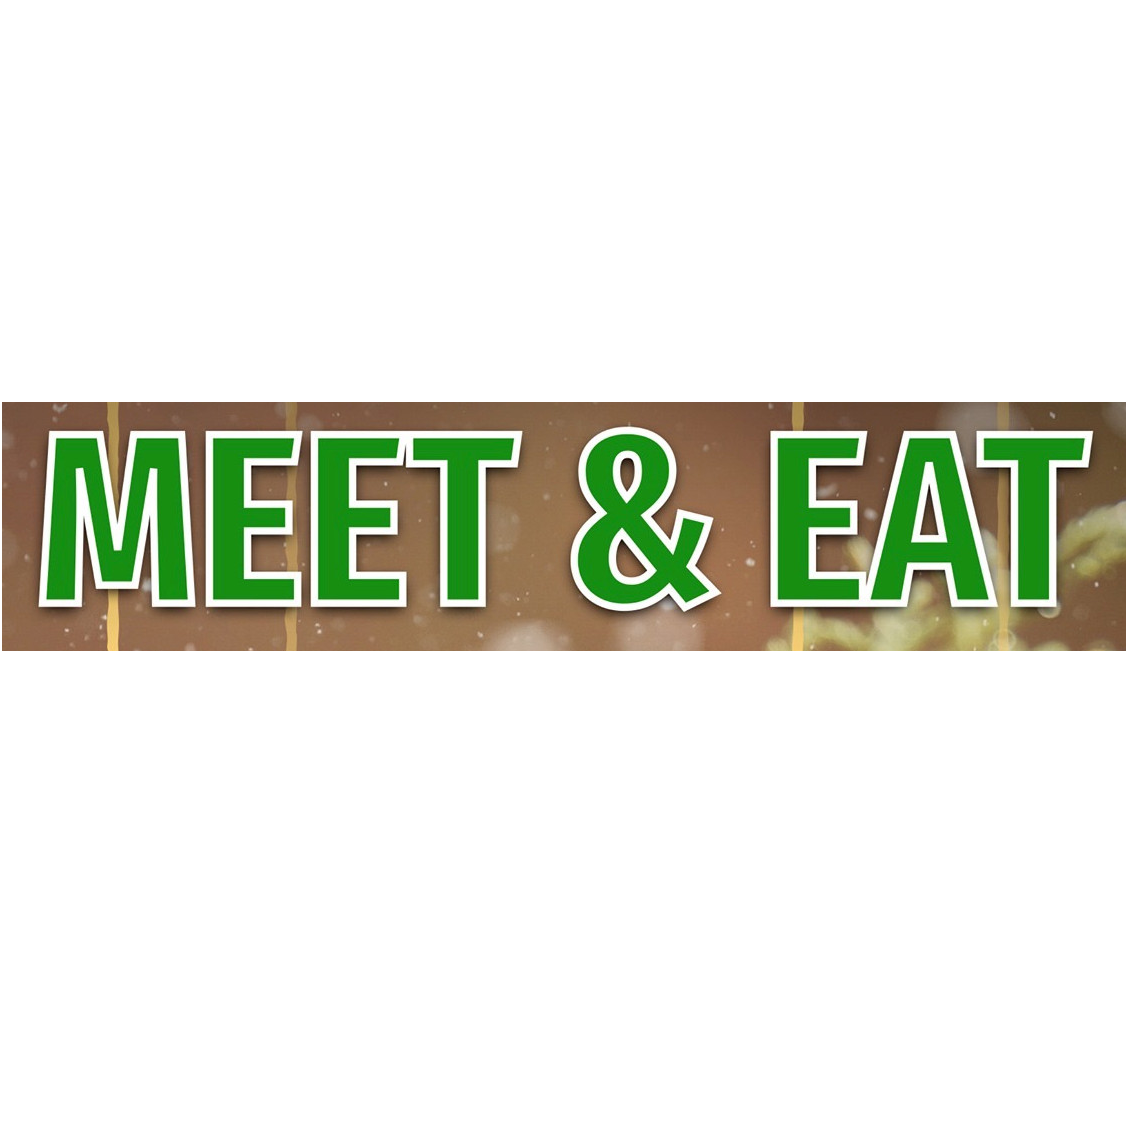 Meet & eat